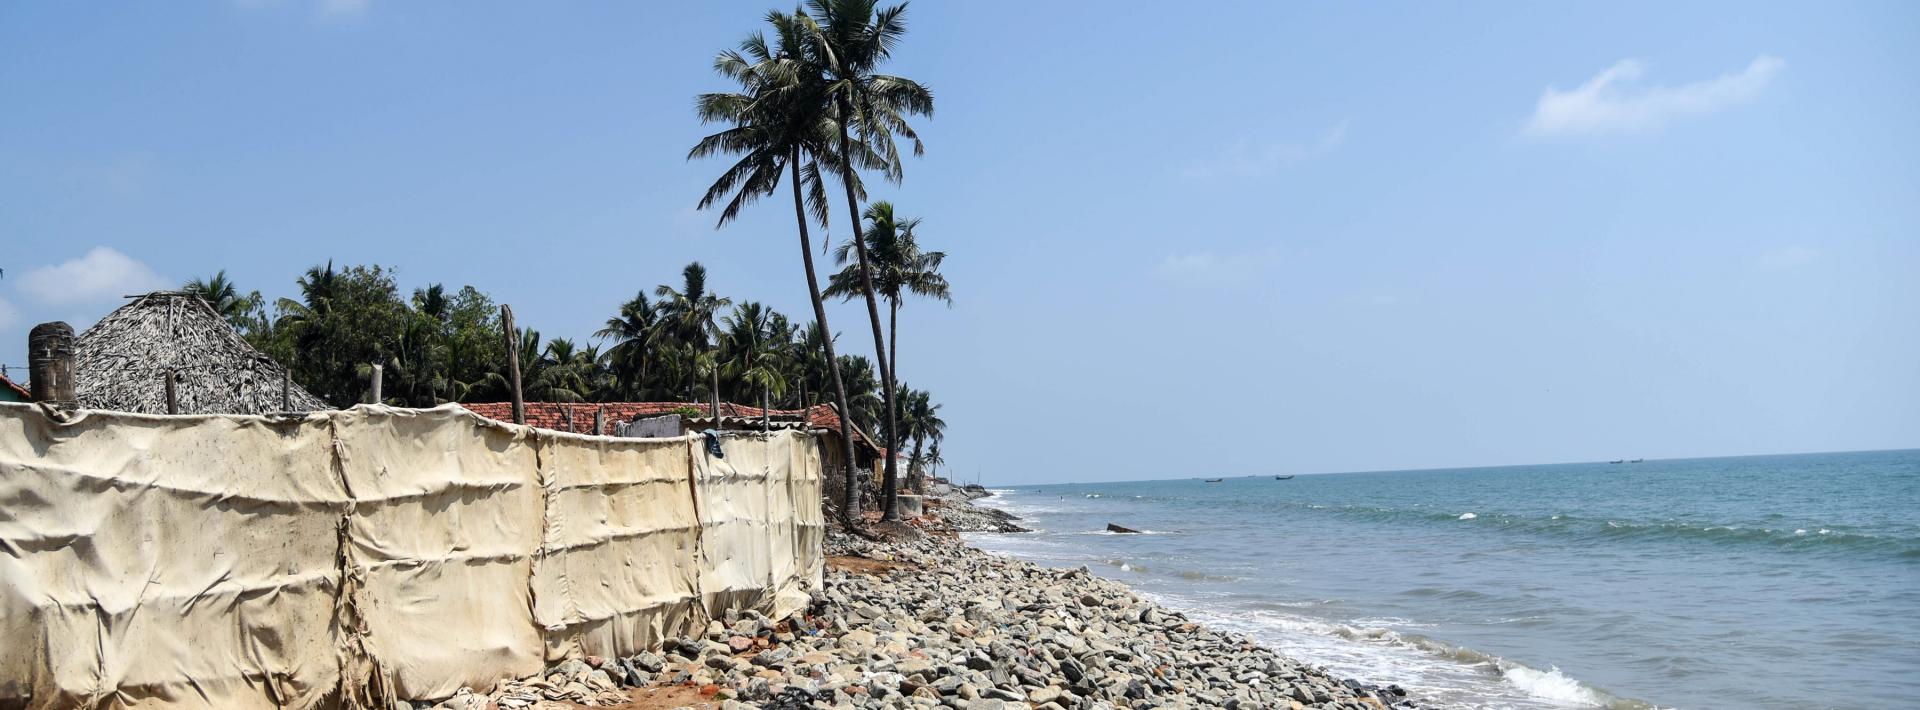 Erosion along the Kakinada coast